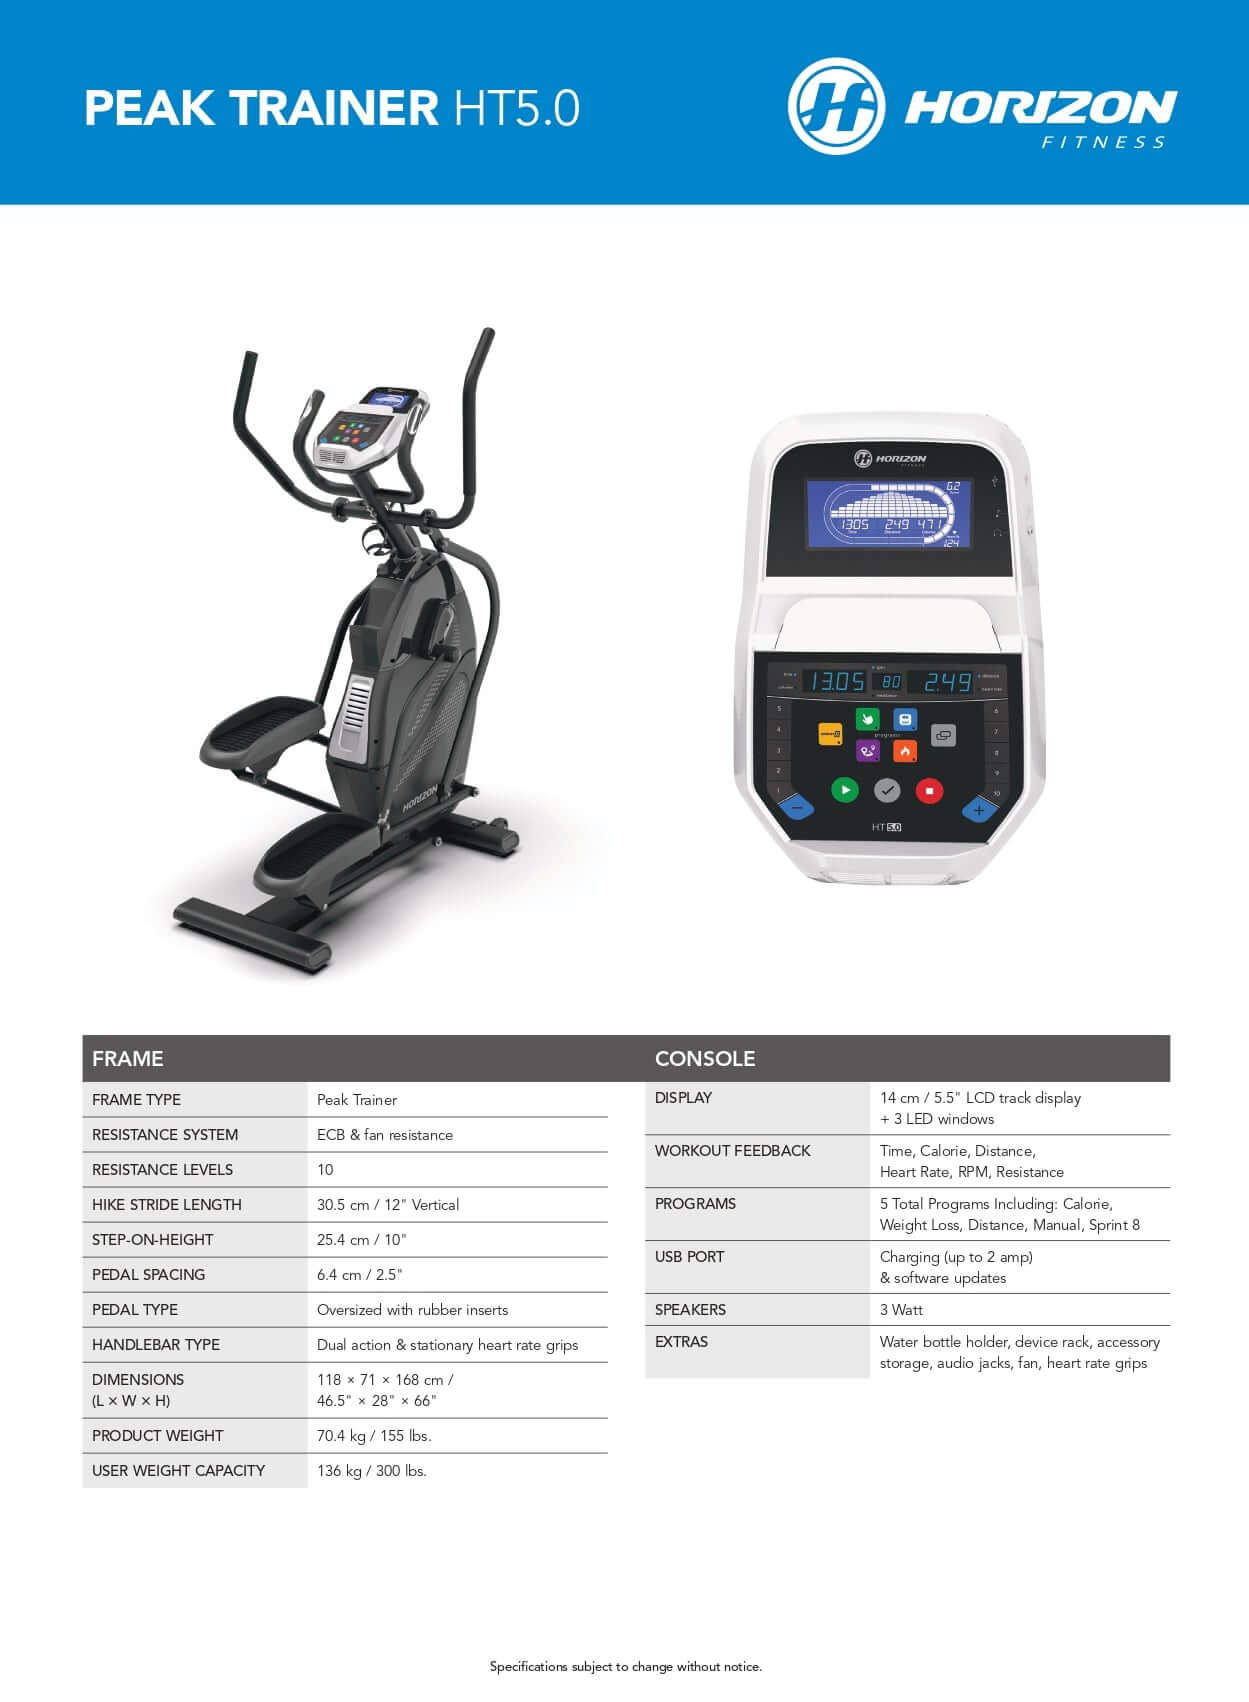 HORIZON Peak Trainer Fitness Wellness Pro Equipment –